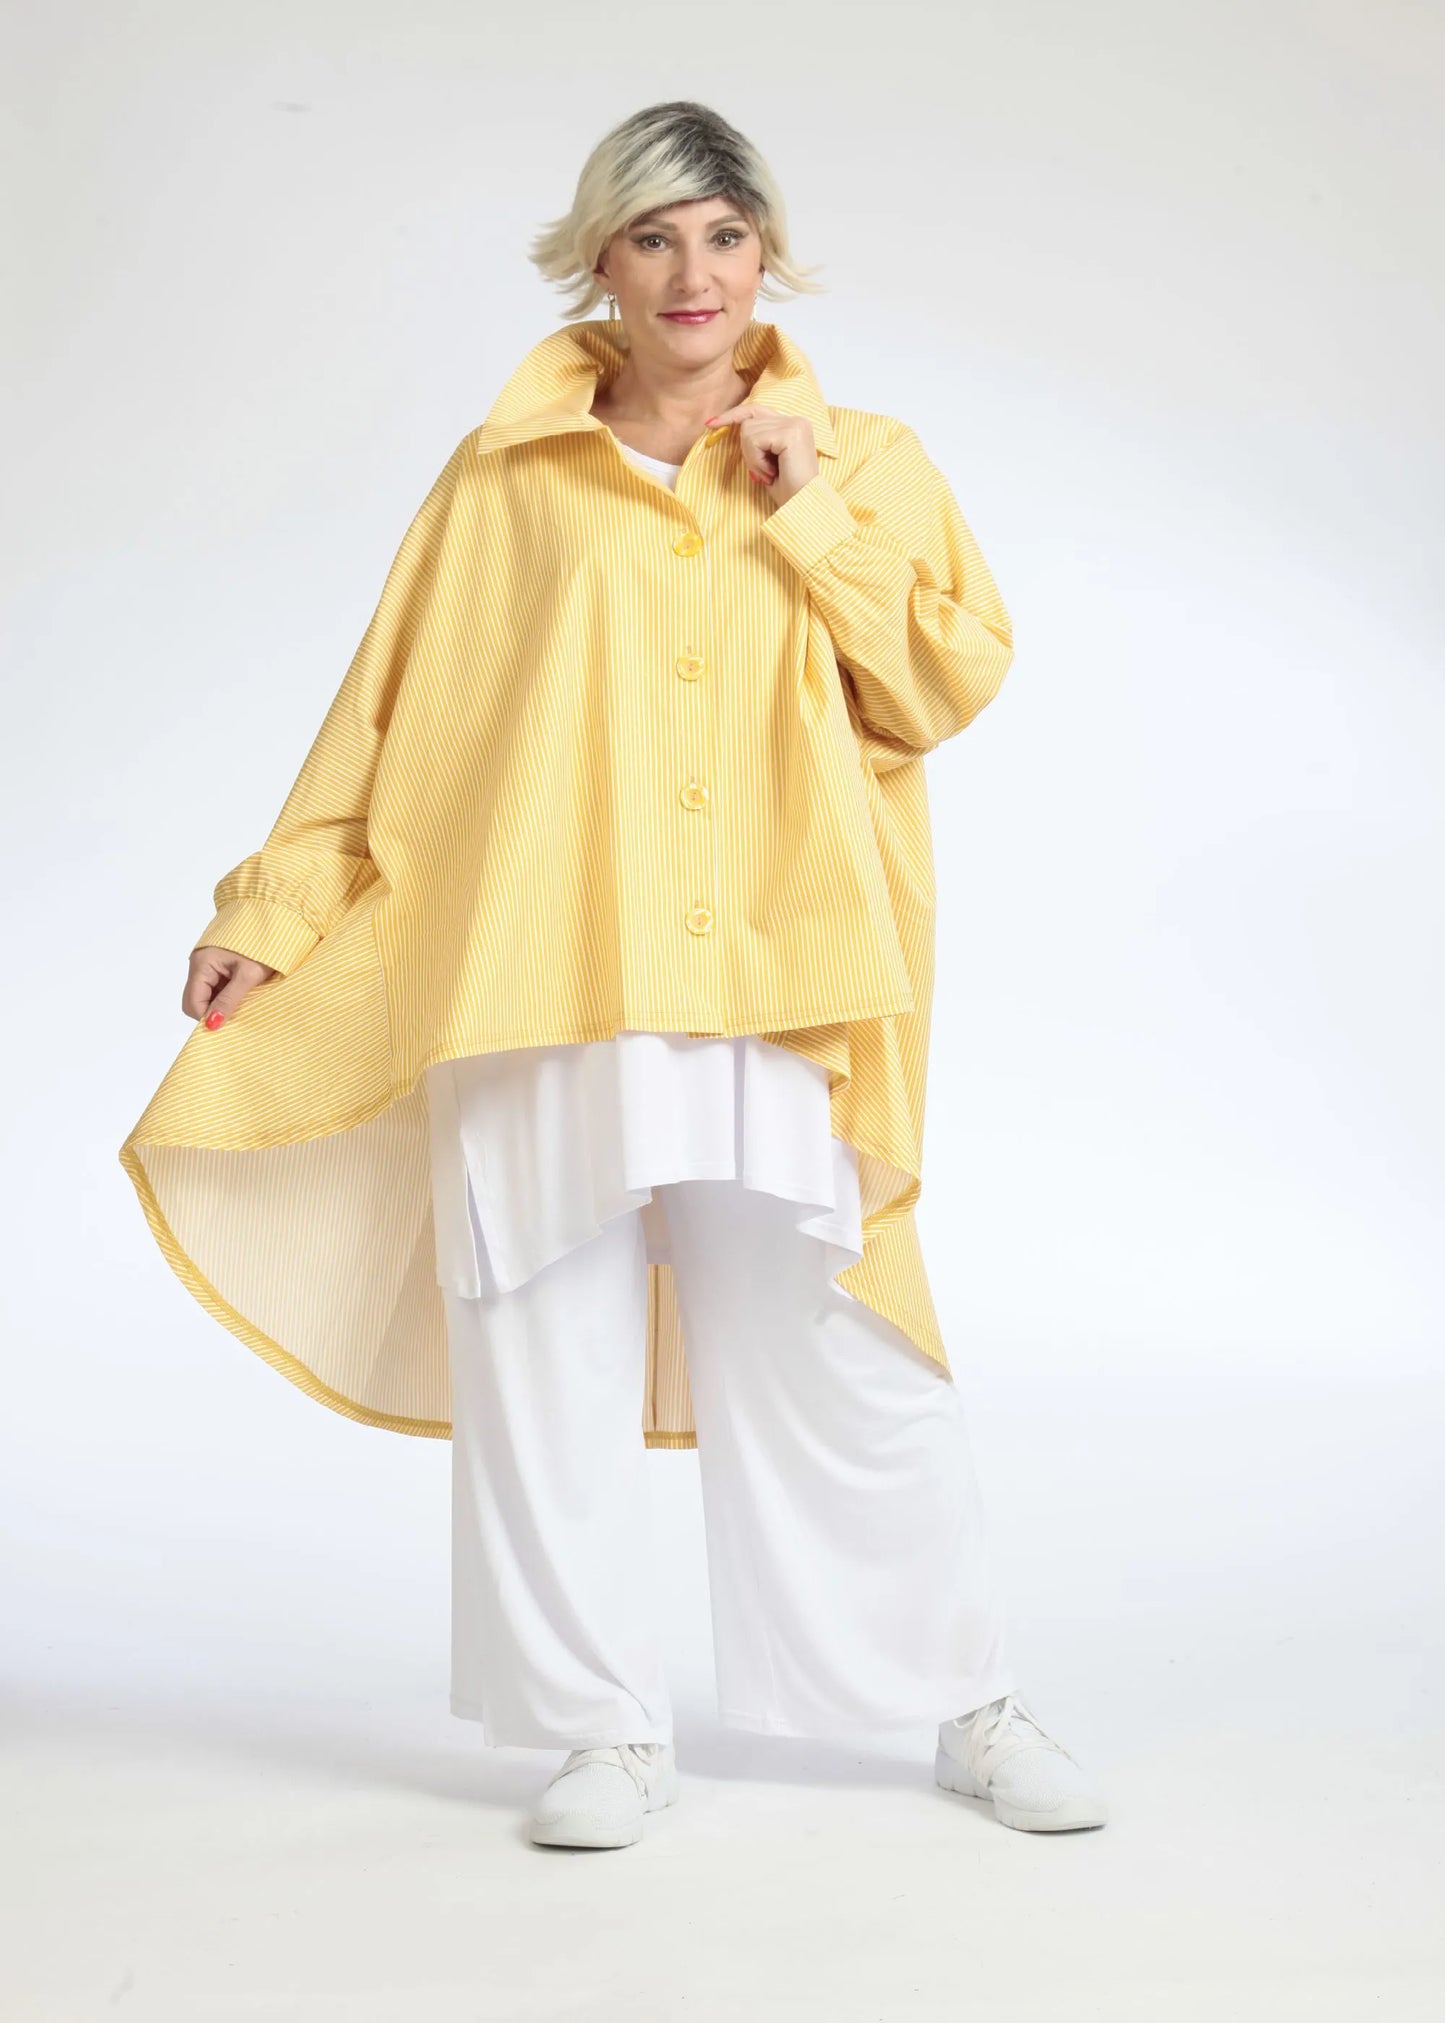 Sommer Bluse in Vokuhila Form aus glatter Popeline Qualität, Verena in Gelb-Weiß